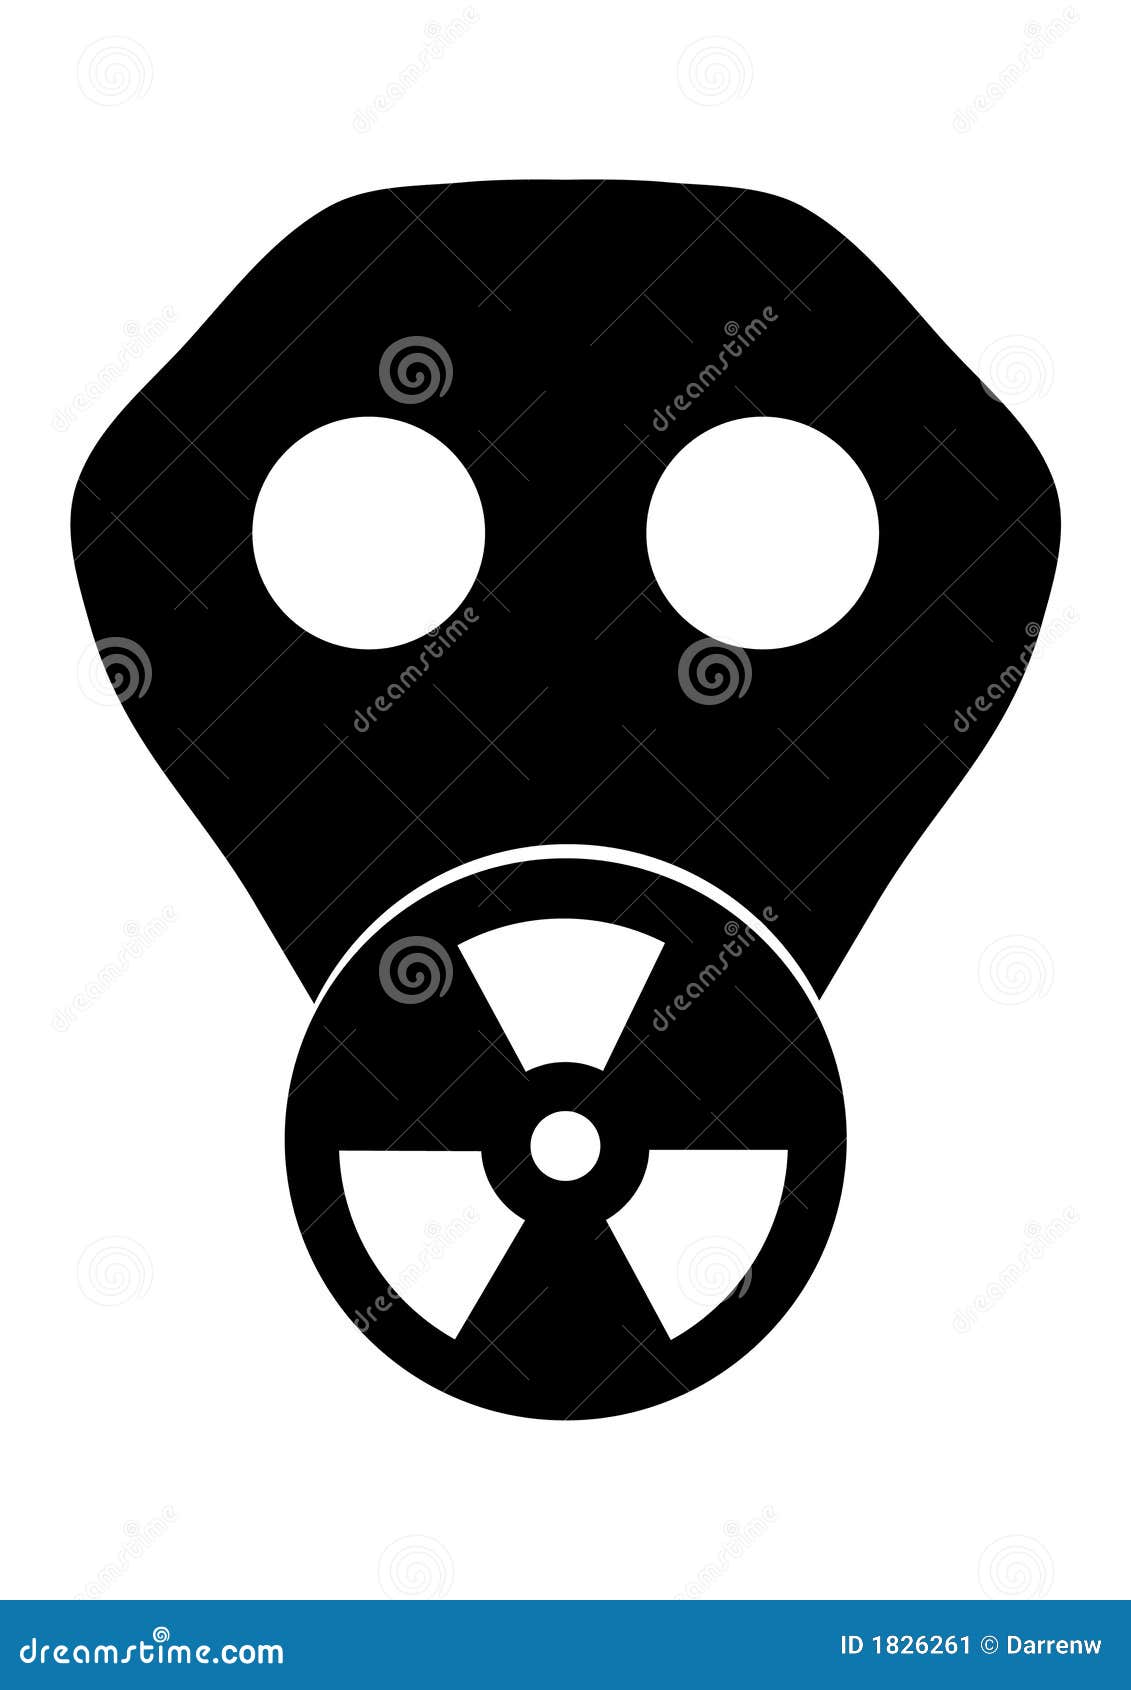 Máscara tóxica. Ilustración blanco y negro de una careta antigás con el símbolo tóxico visualizado en el filtro